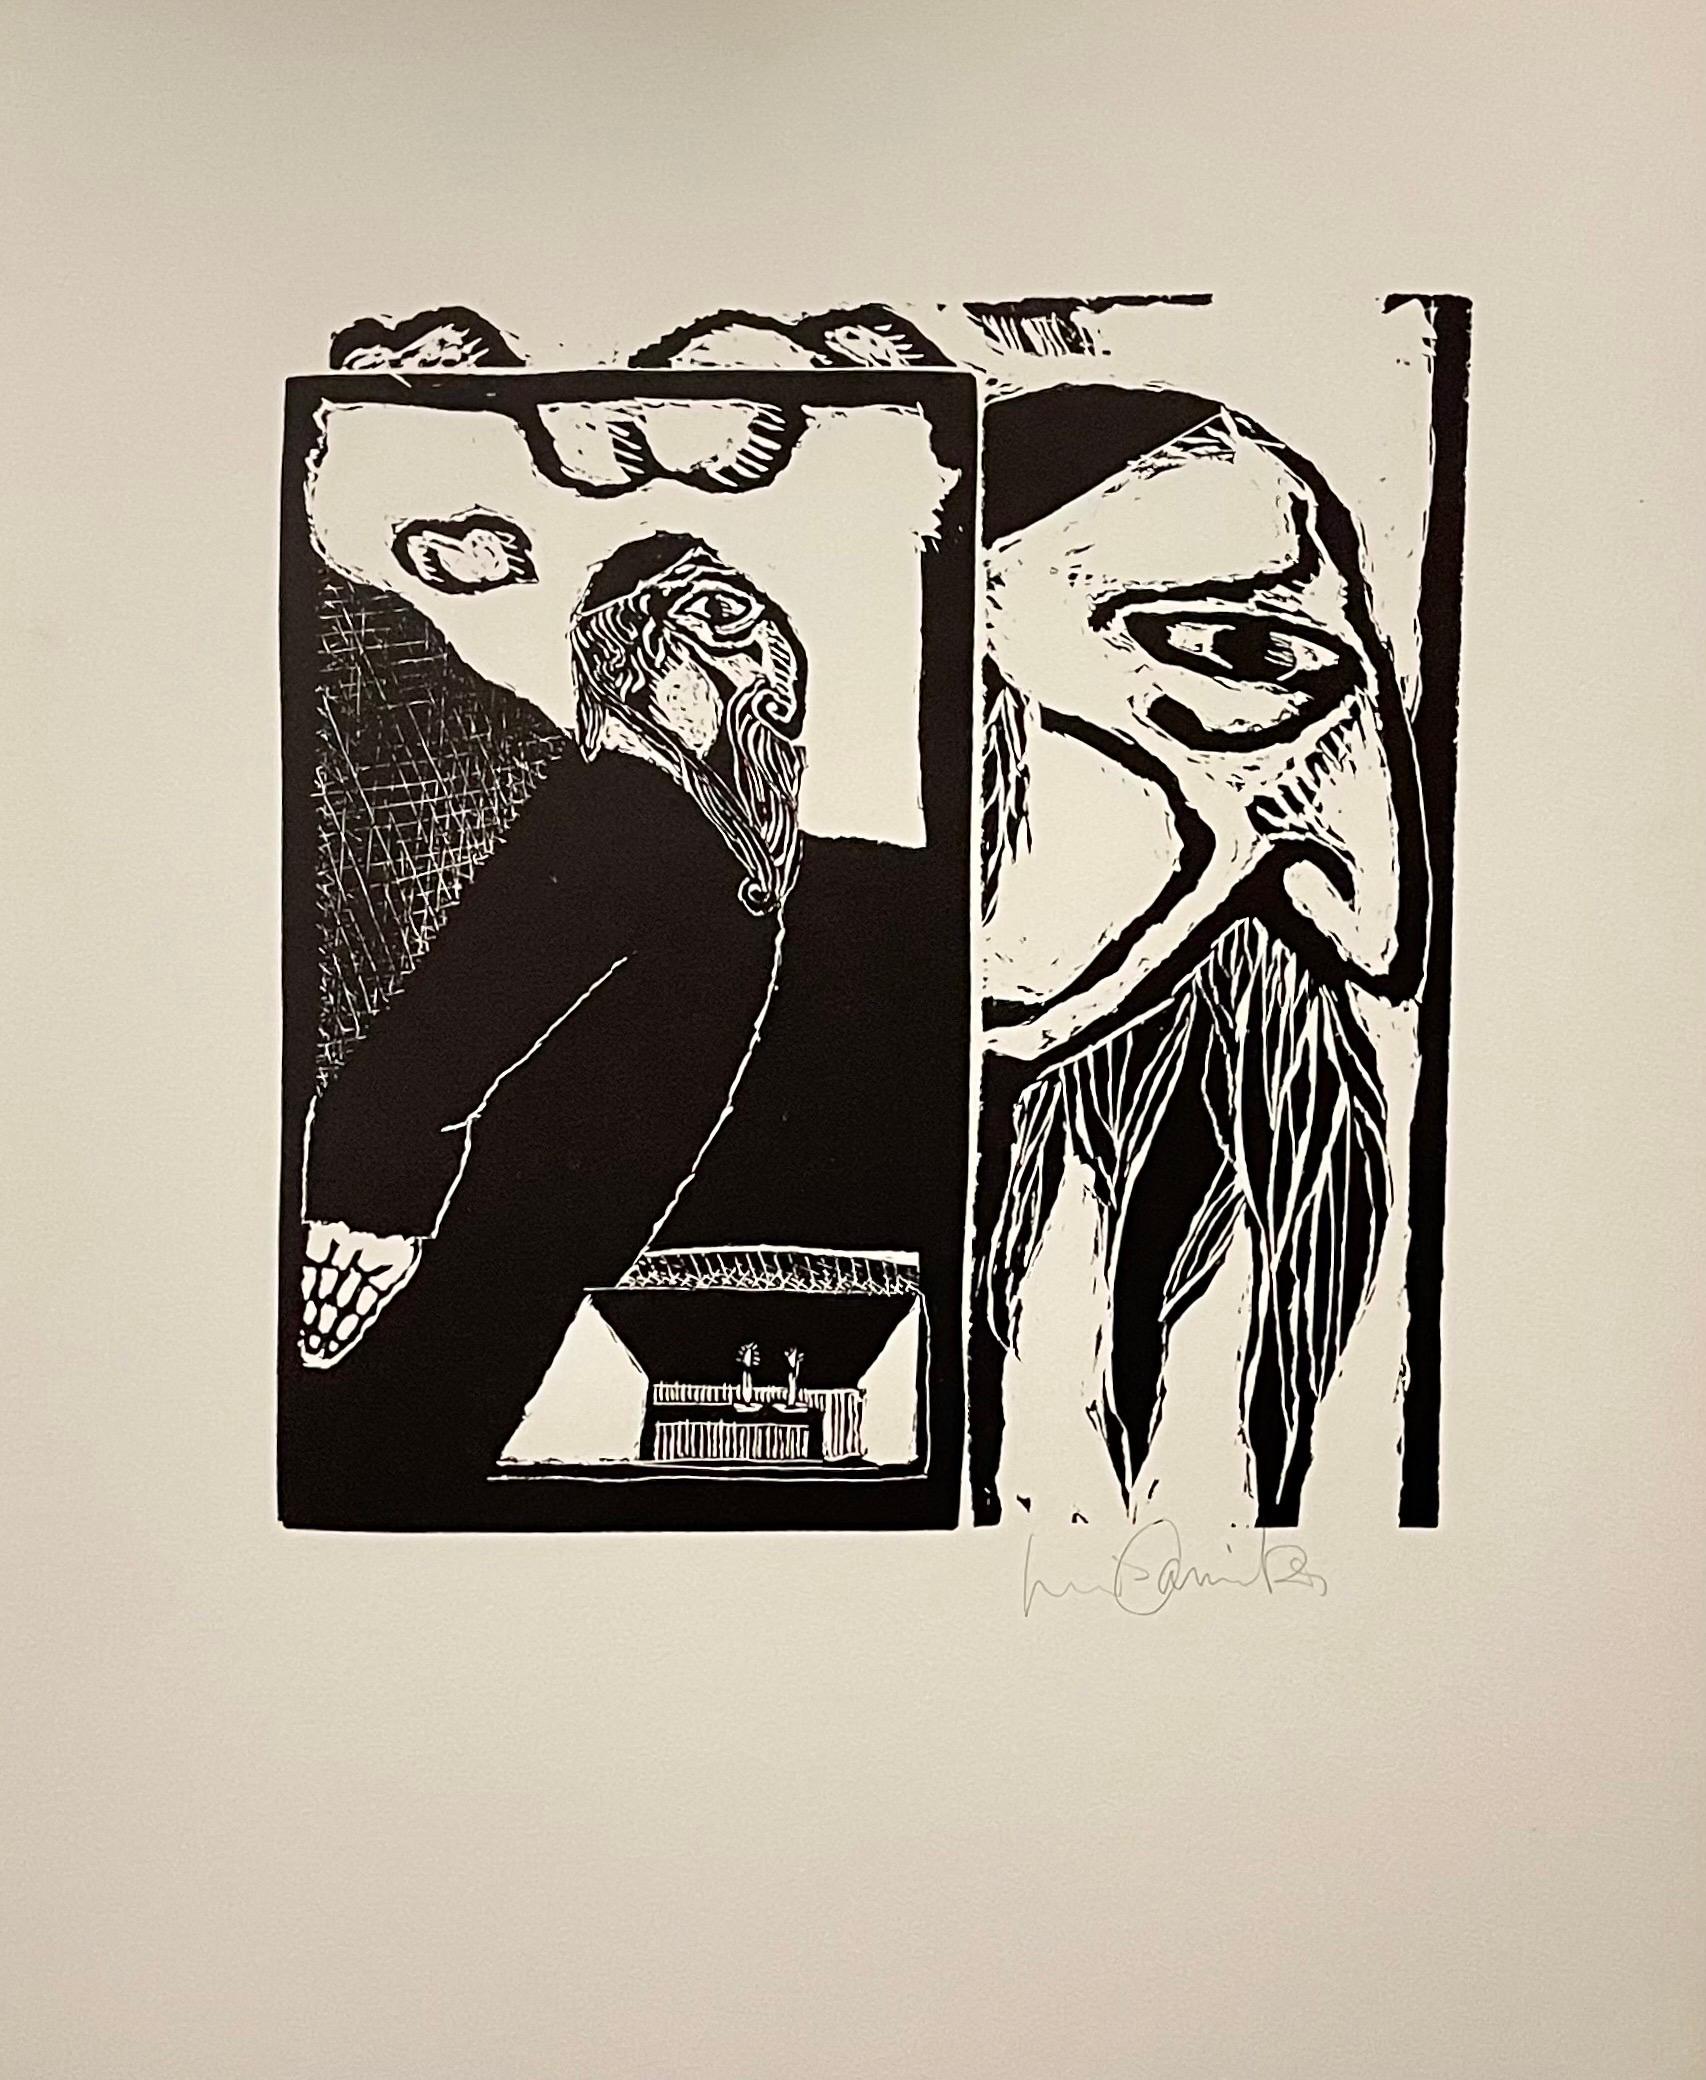 Luis Camnitzer und Martin Buber (1878-1965), 
New York: JMB Publishers Ltd, 1970.
Gedruckt bei The New York Graphic Workshop. 
Handsigniert auf Arches-Papier. (Auflage 24/100, nummeriert auf der Begründungsseite)

Farbholzschnitte nach Volksmärchen